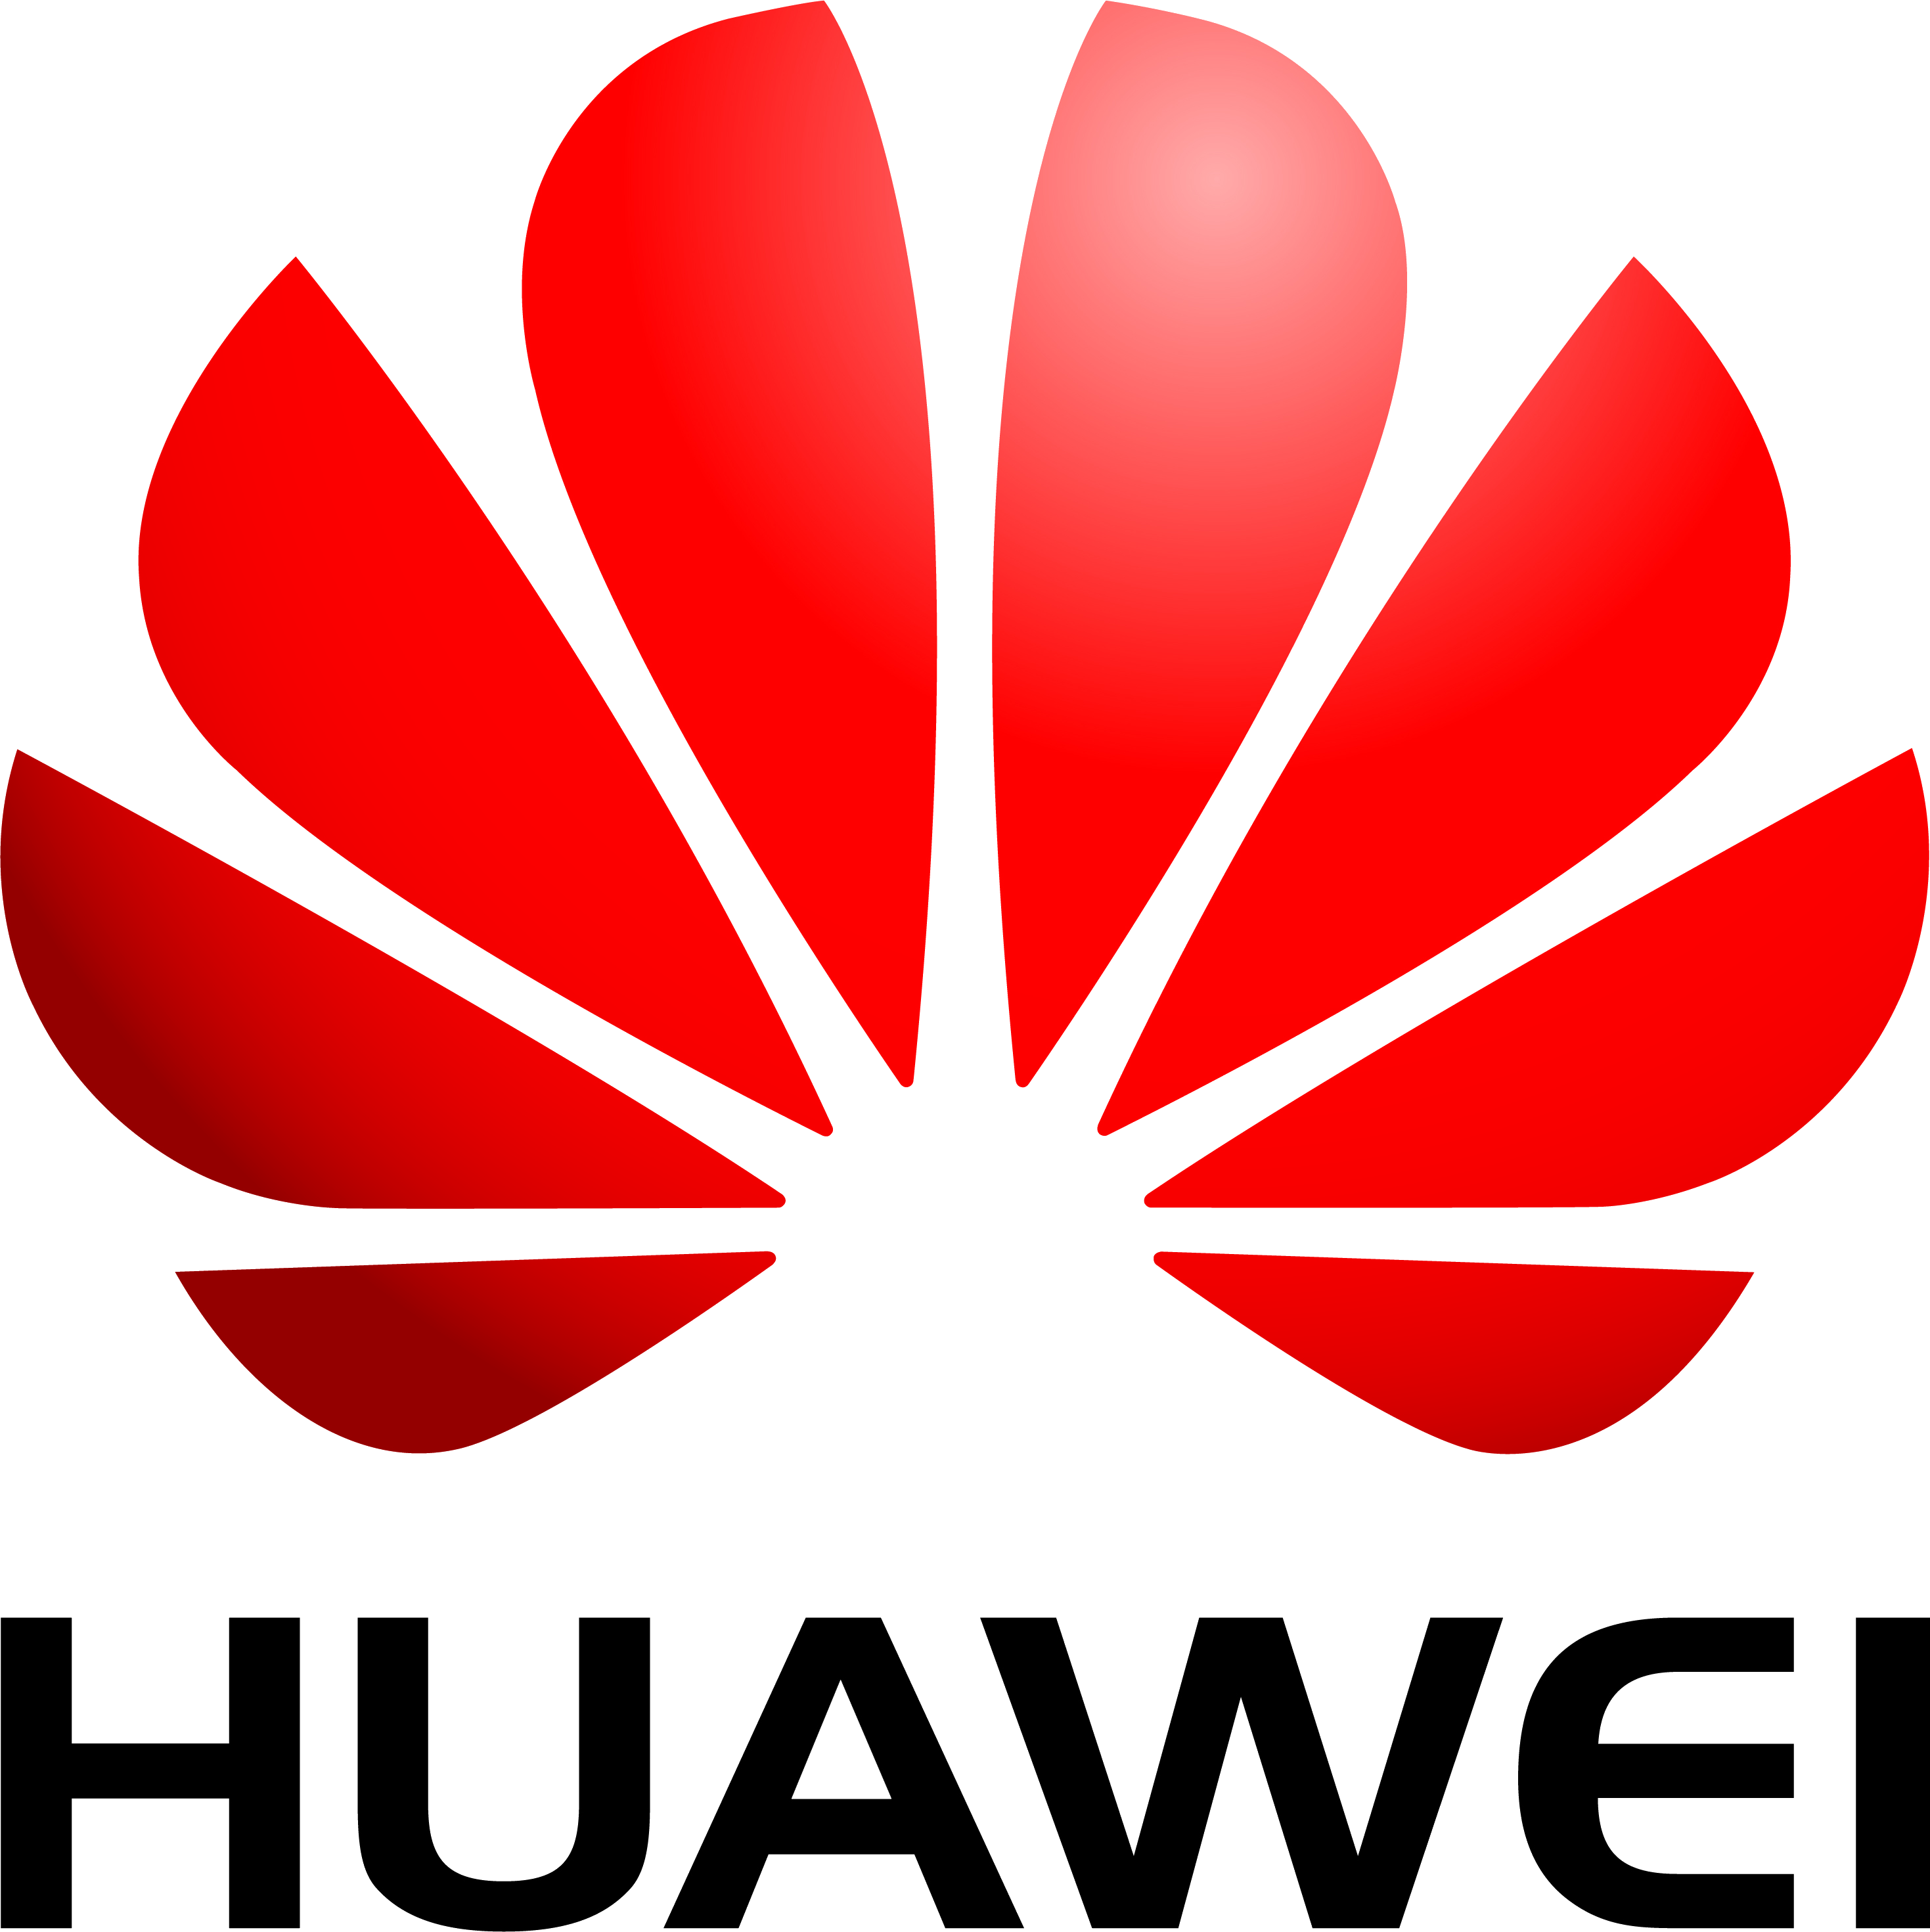 huawei logo png